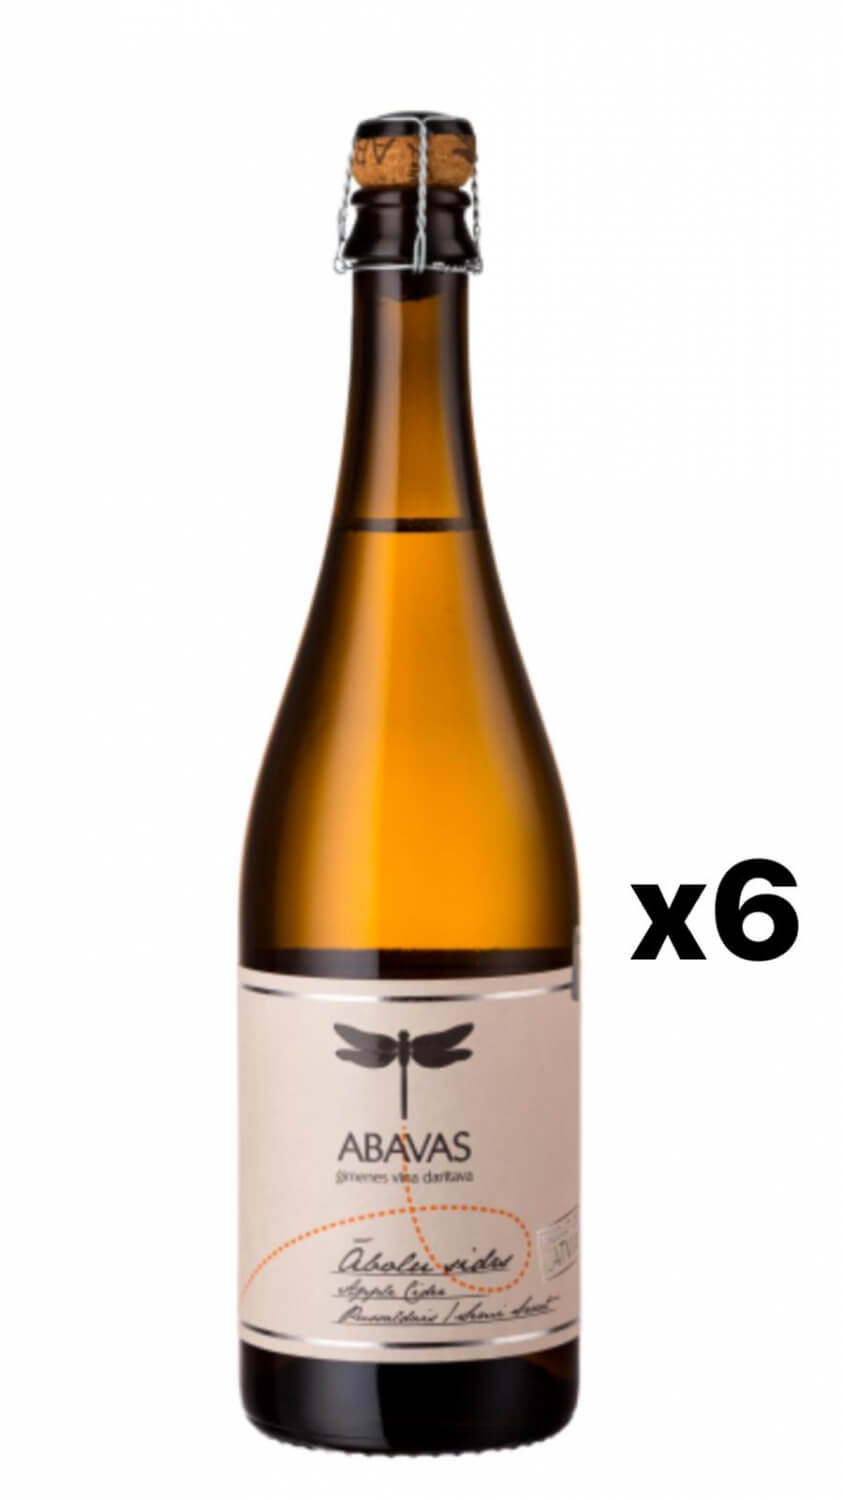 ABAVAS Apple cider Medium 7.5% 6x75cl